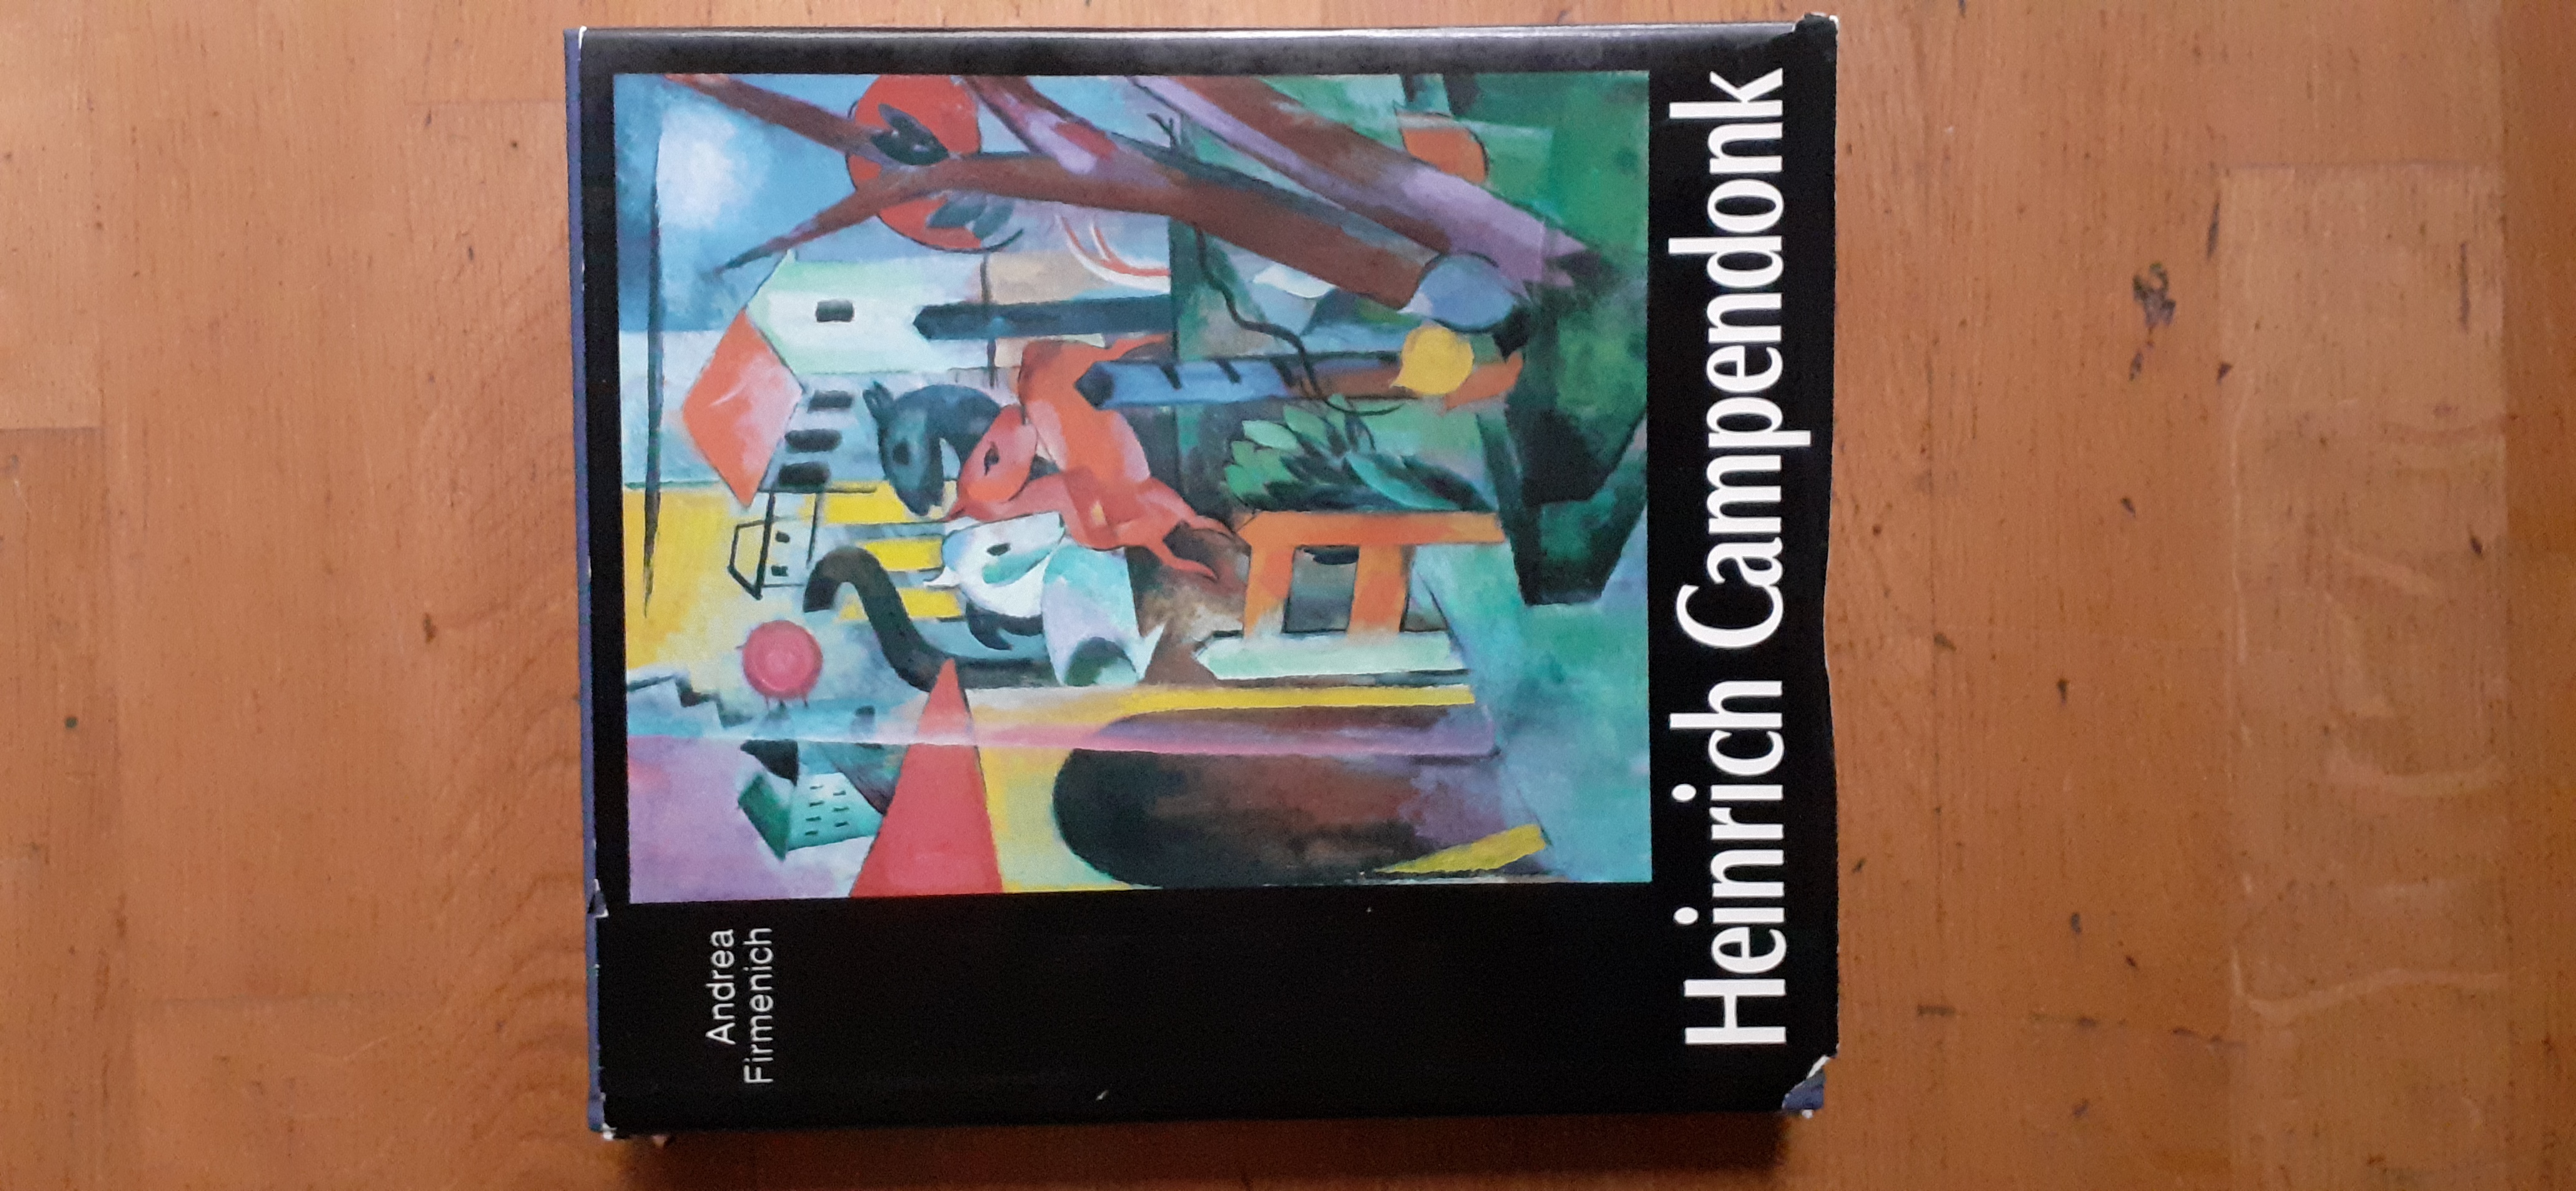 HEINRICH CAMPENDONK 1889 - 1957. Leben und expressionistisches Werk. Mit Werkkatalog des malerischen Oeuvres. - FIRMENICH Andrea.